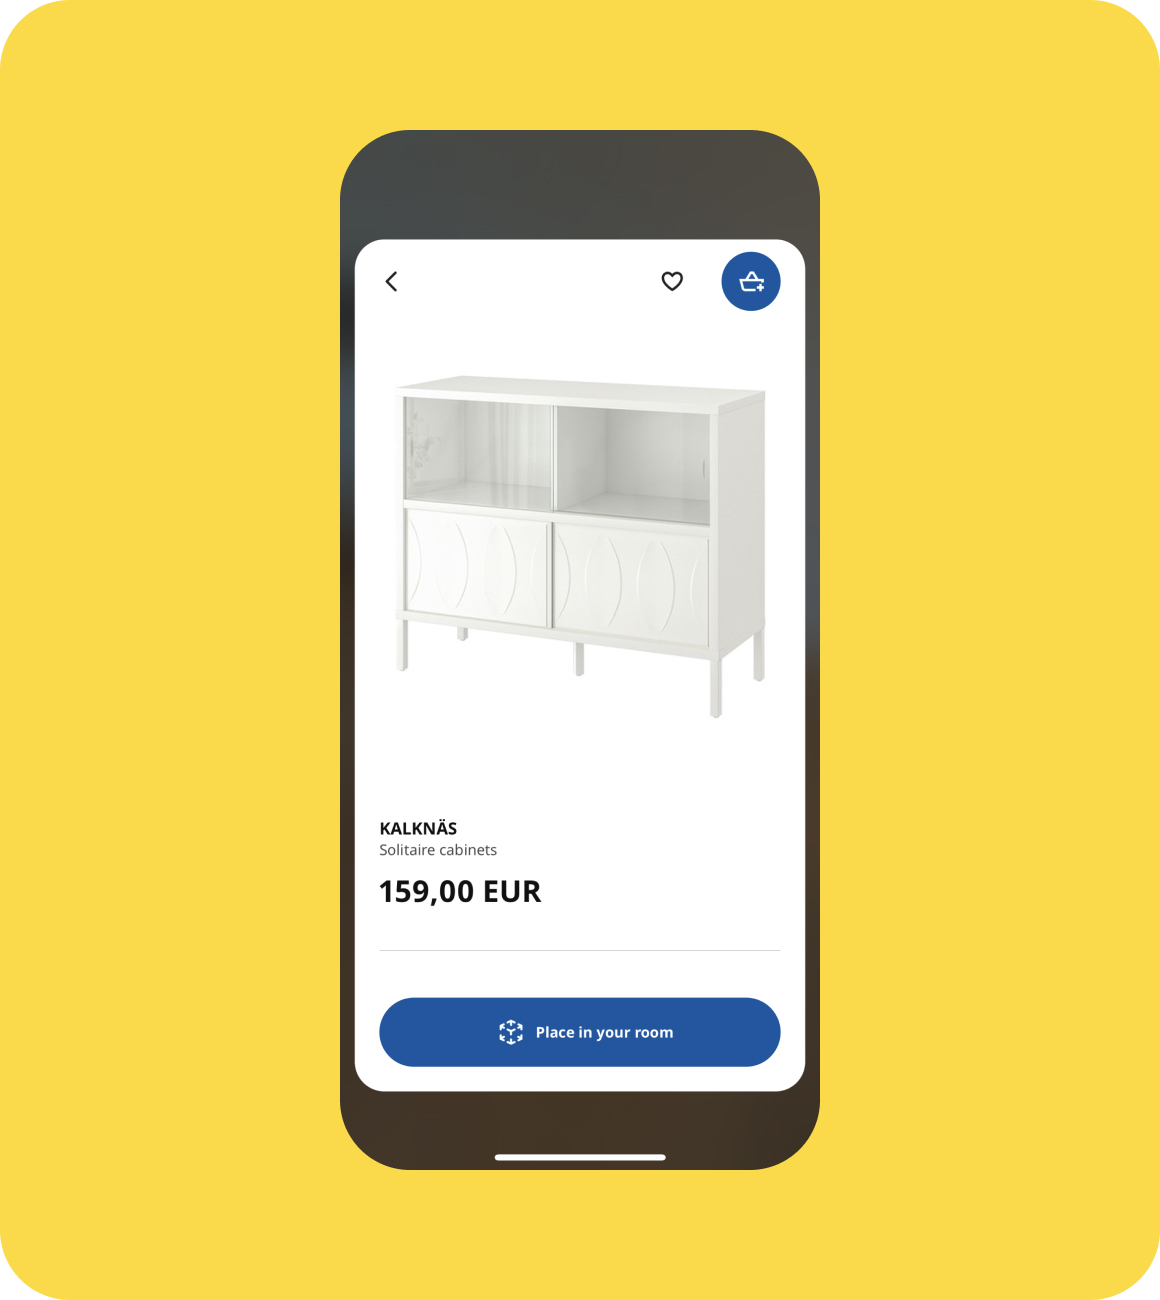 IKEA Furniture in App